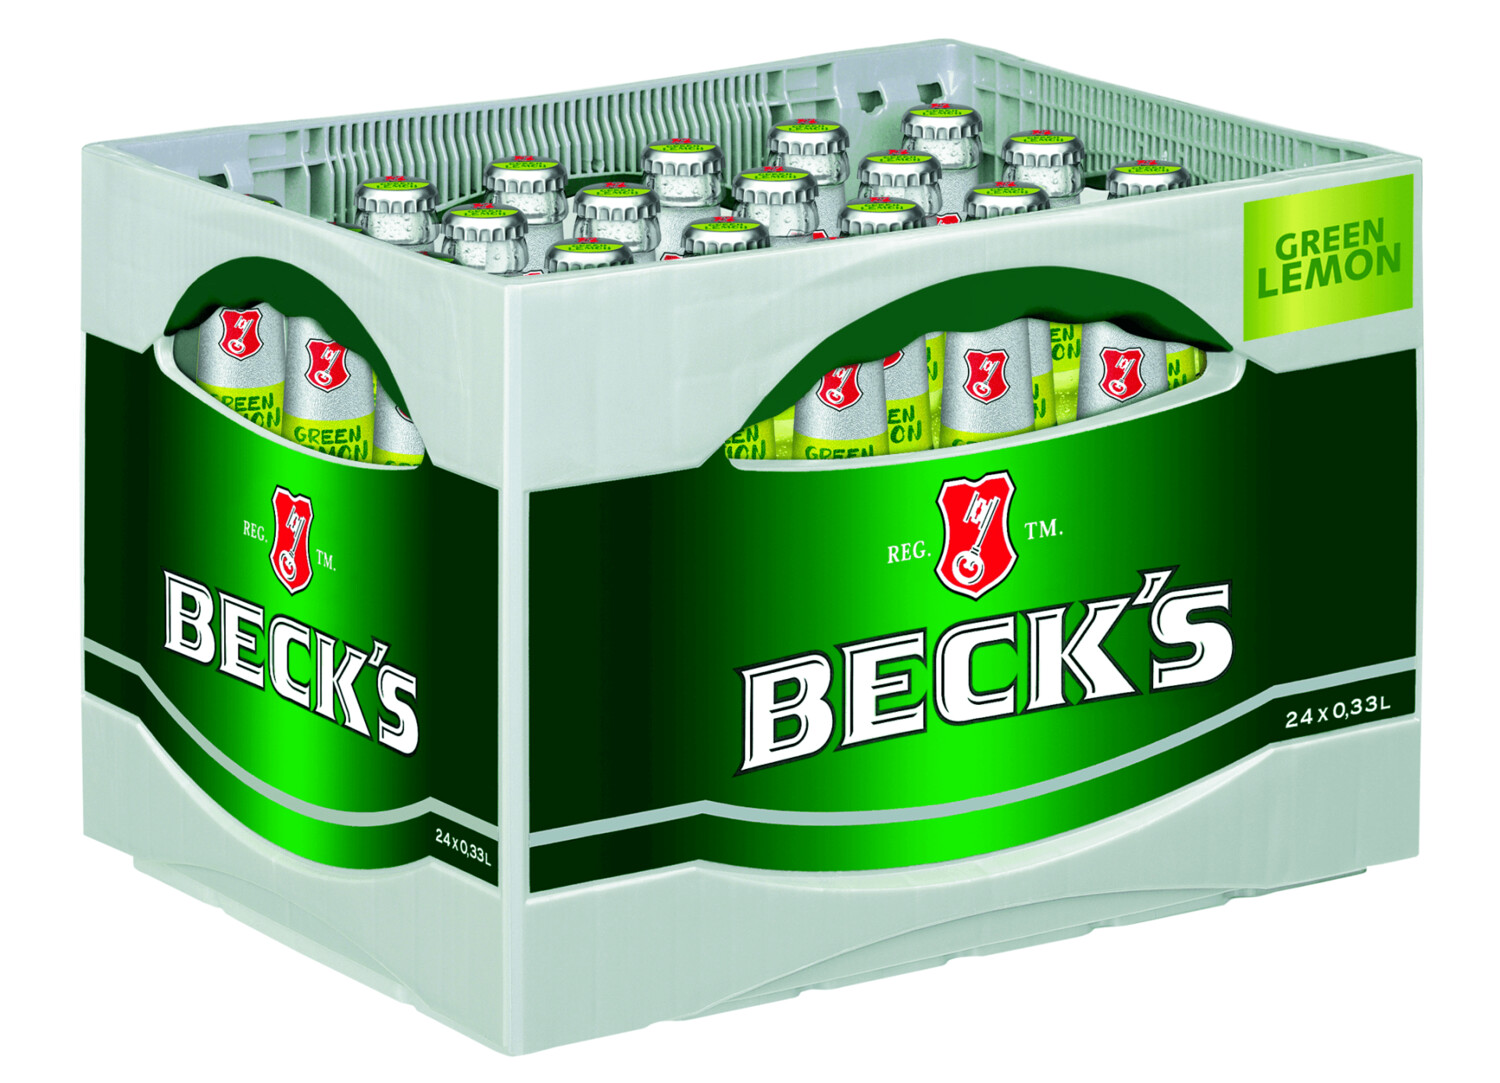 Becks Green Lemon
(24x 0,33l FL Gla19,75€ inkl. MwSt. zzgl. Pfand)